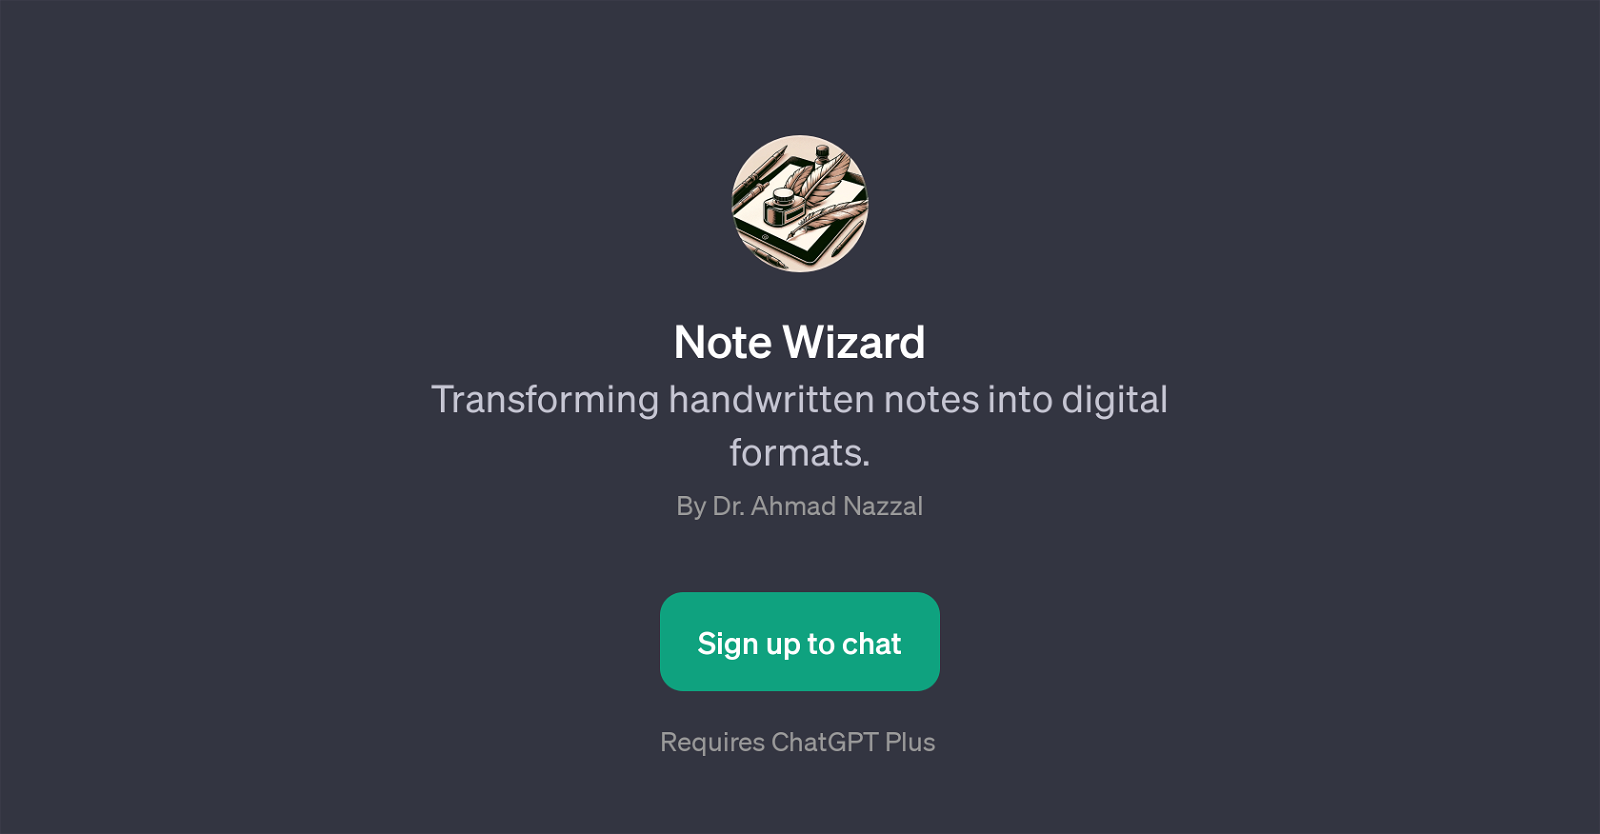 Note Wizard website